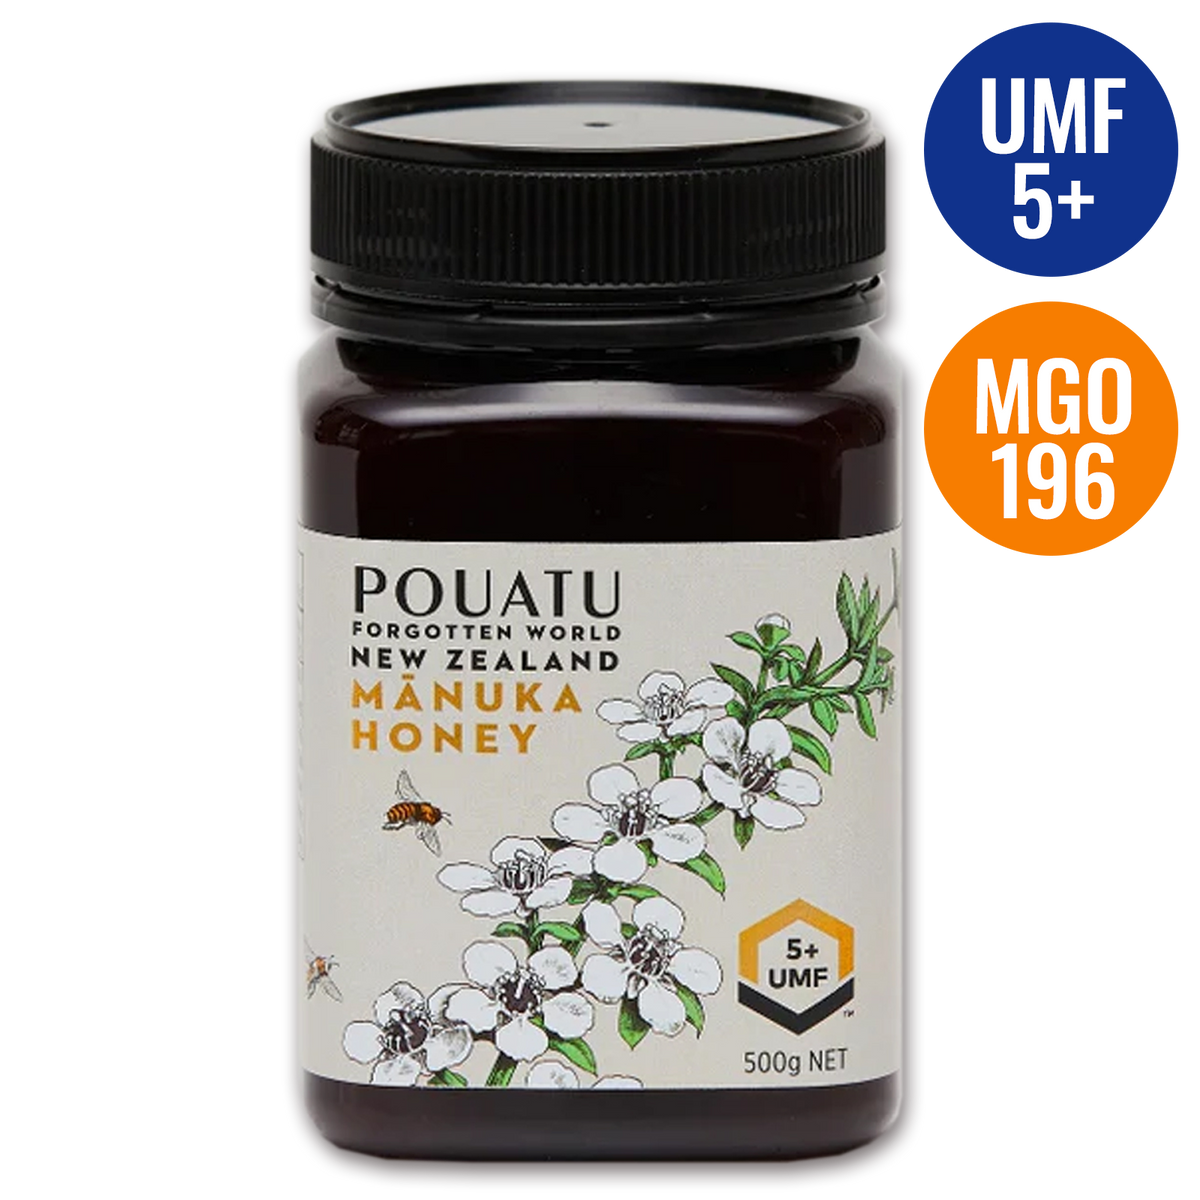 UMF認証 高品質 天然 蜂蜜 マヌカハニー UMF5+ MGO196 ニュージーランド産 (500g) ホライズンファームズ